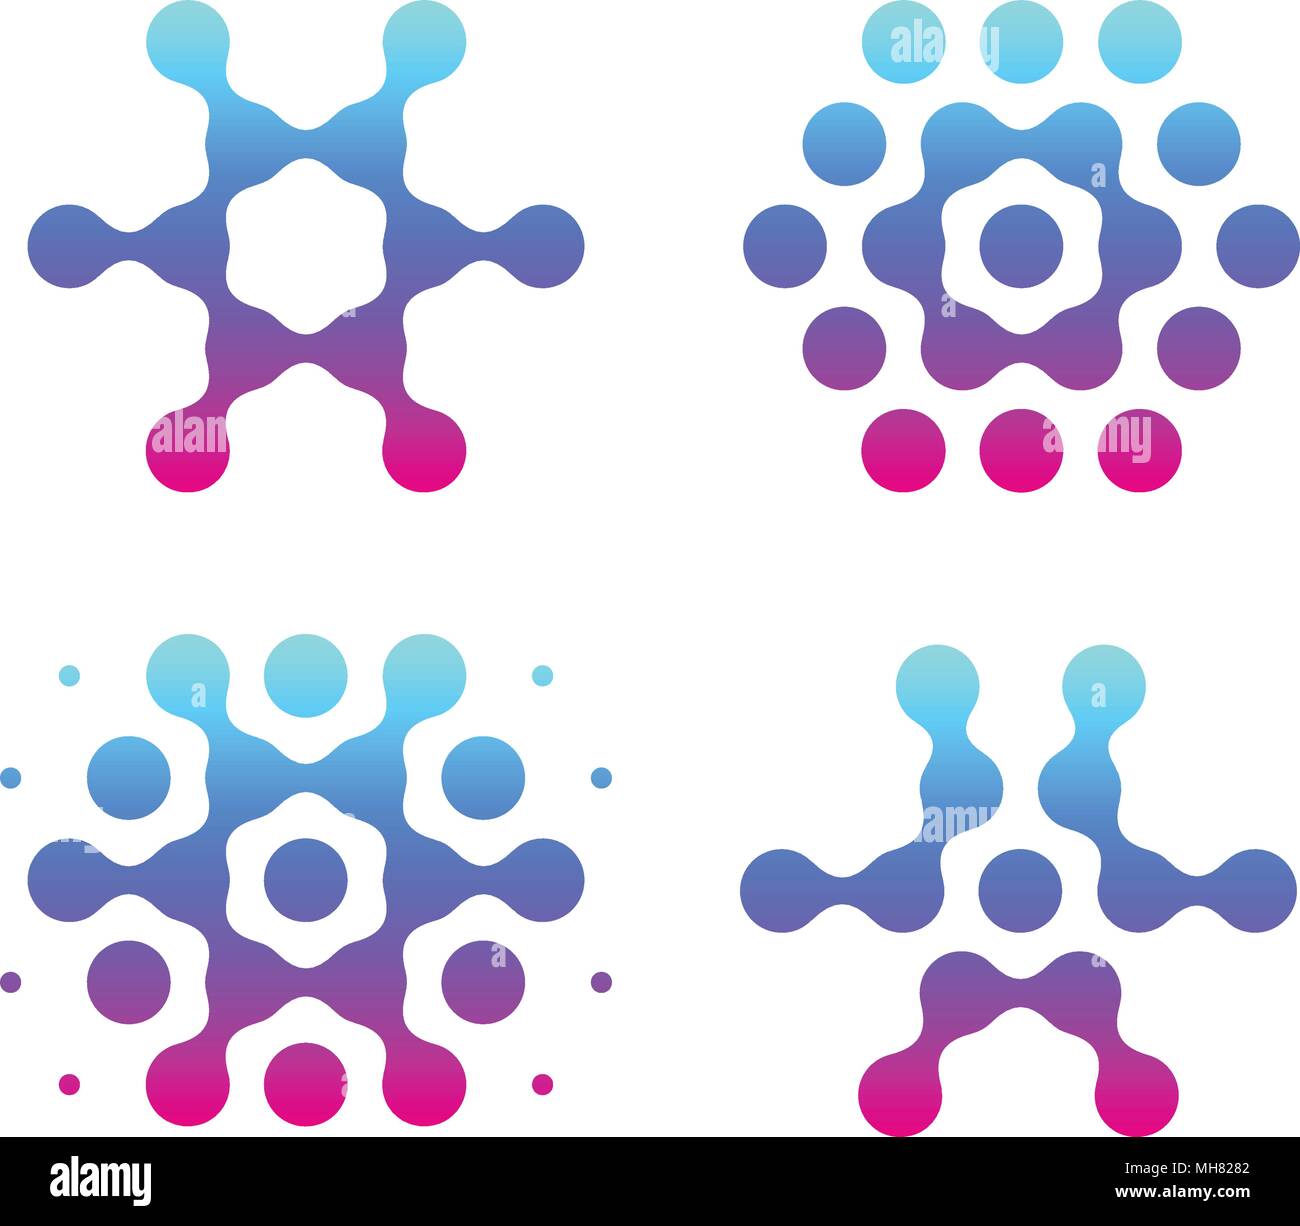 Digitale Schneeflocken Symbole, molekulare Wissenschaft logo, Abstrakte blaue Taste von dots, Waben symbol Sammlung auf weißem Hintergrund. Stock Vektor